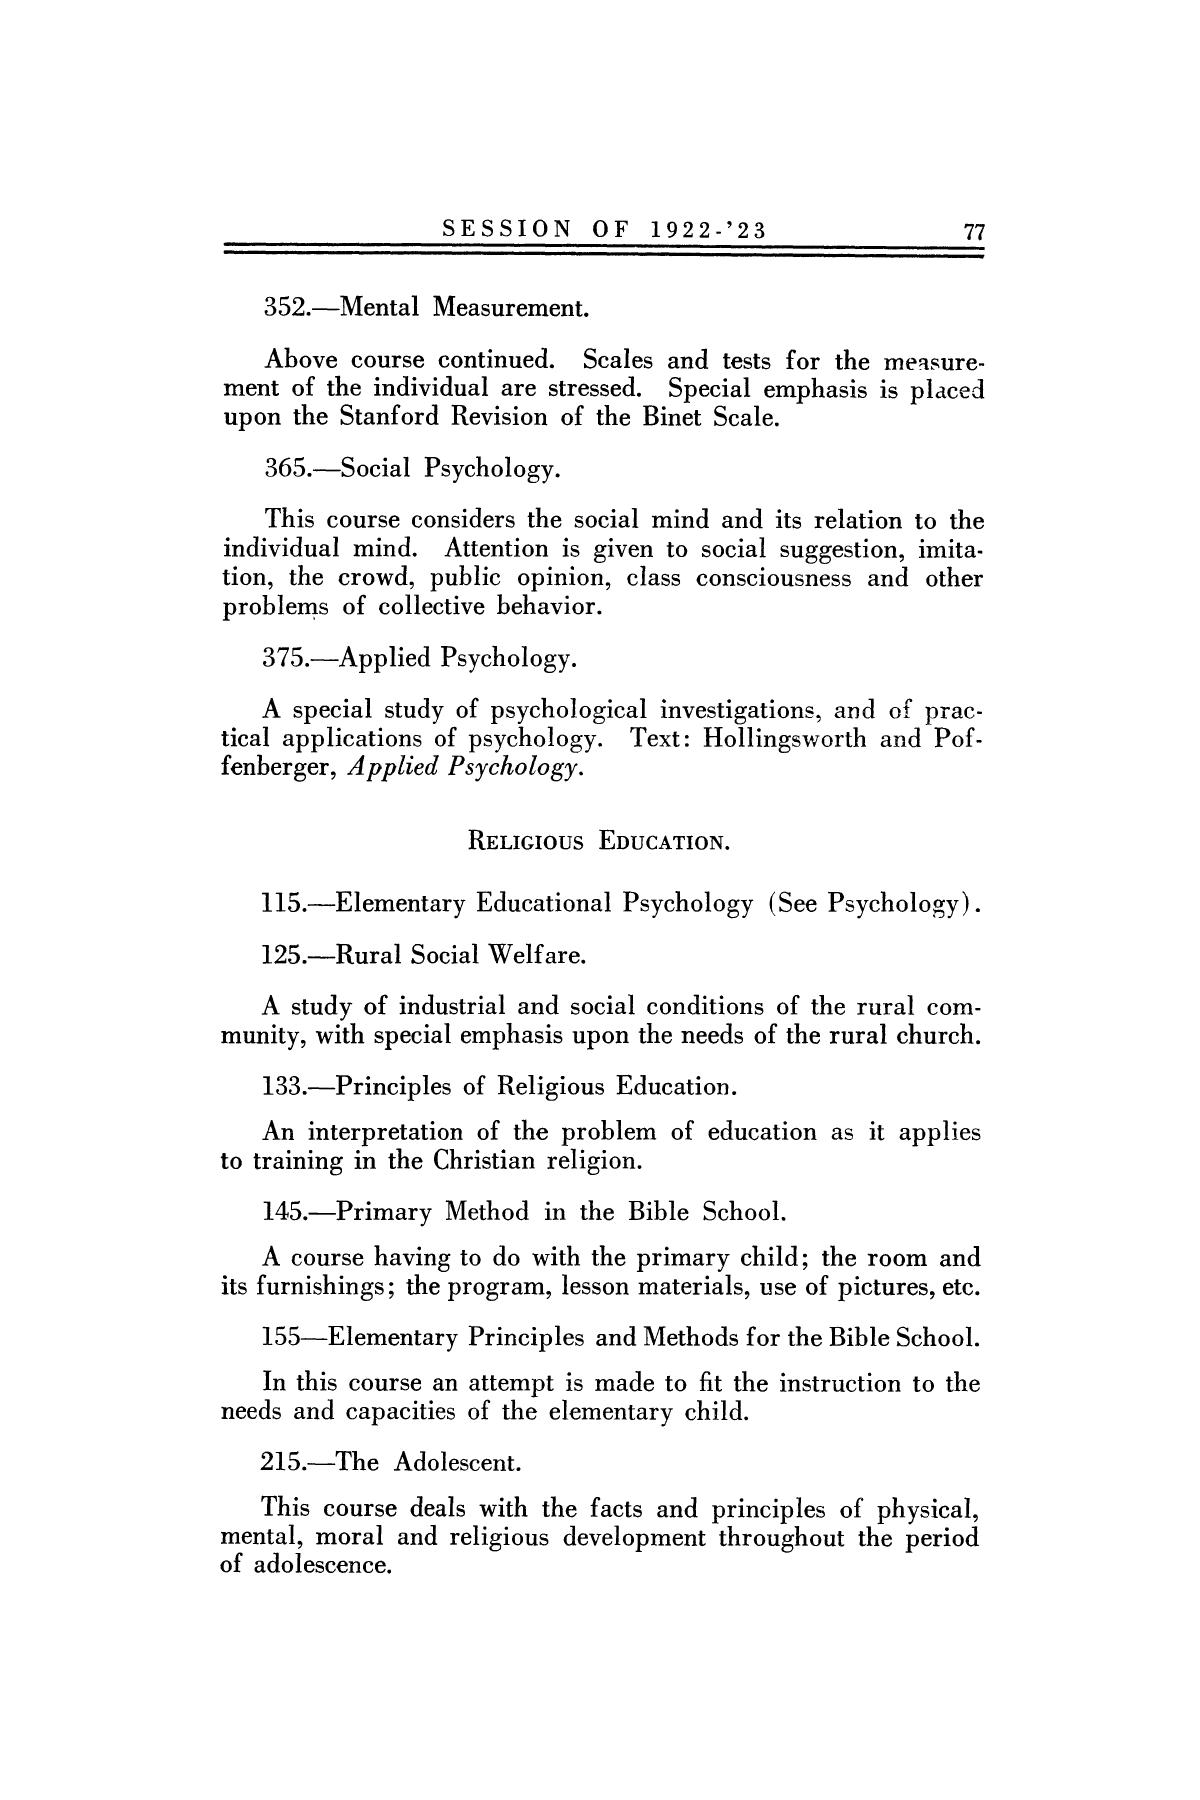 Catalog of Abilene Christian College, 1922-1923
                                                
                                                    77
                                                